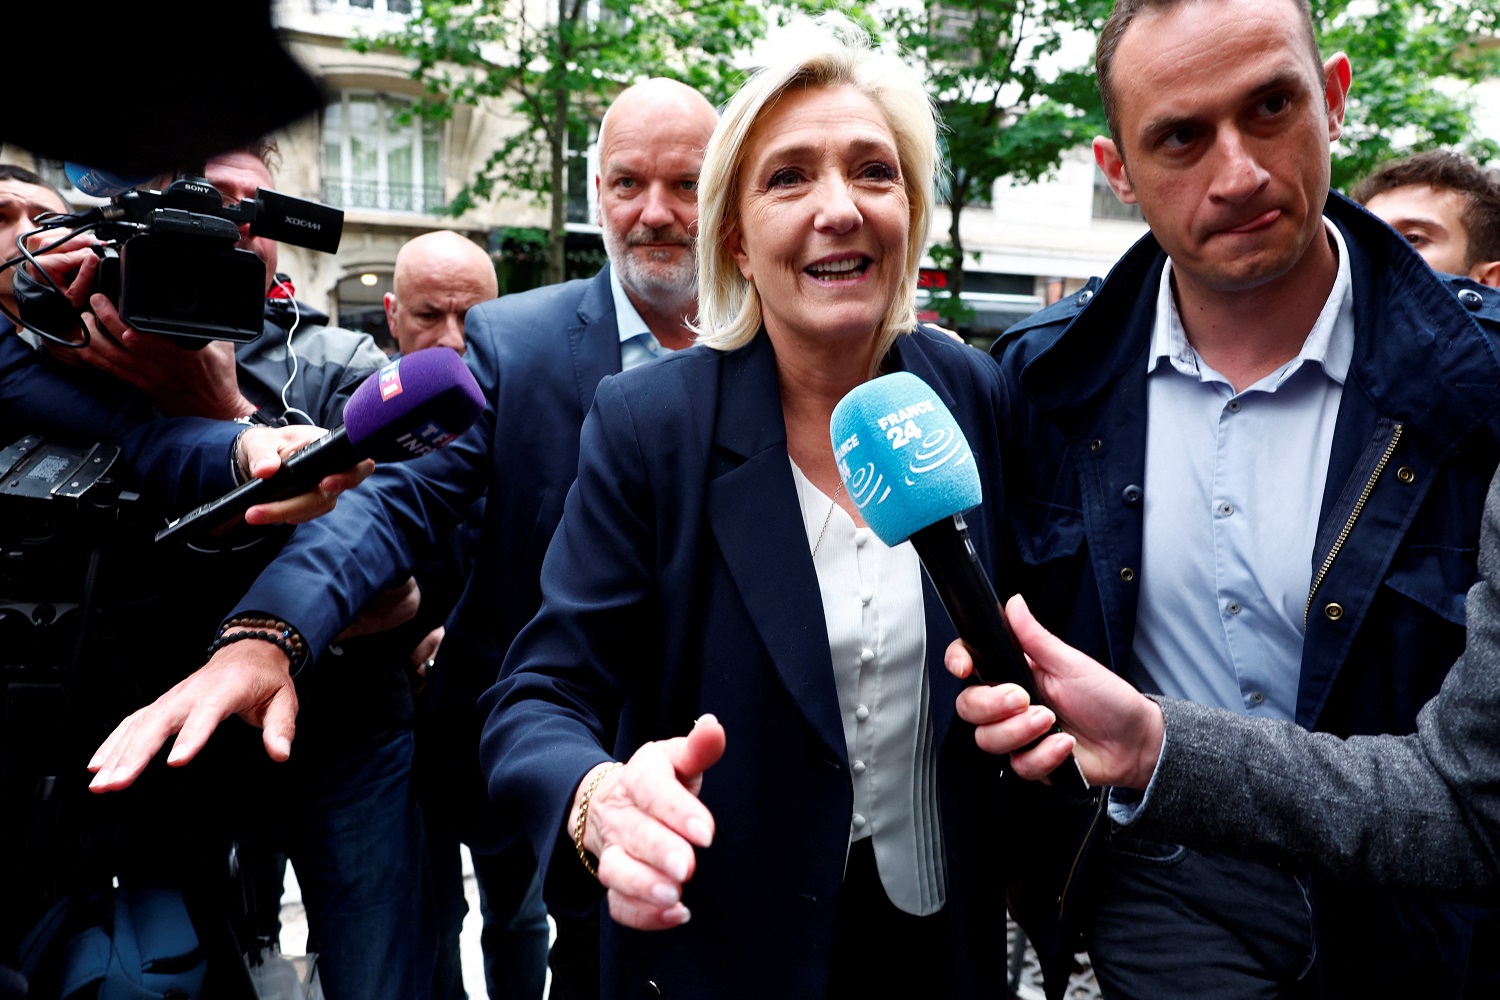 Marine Le Pen é cercada por jornalistas ao chegar à sede do partido RN em Paris (REUTERS/Gonzalo Fuentes)